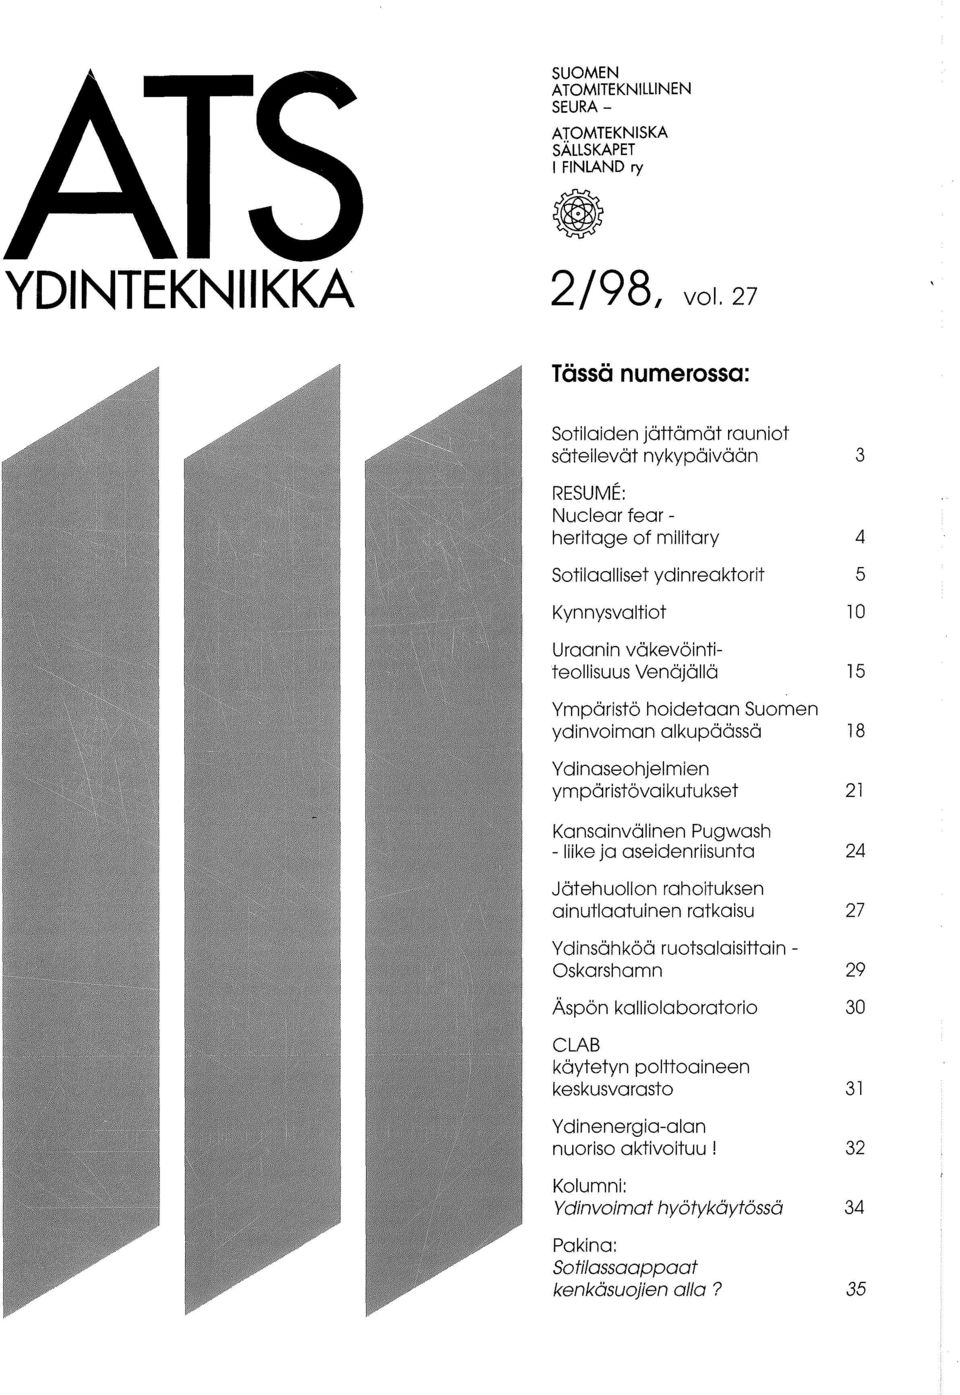 Venajalla Ymparist6 hoidetaan Suomen ydinvoiman alkupaassa Y dinaseohjelmien ympa ristova i kutu kset Kansainvalinen Pugwash - liike ja aseidenriisunta Jatehuollon rahoituksen